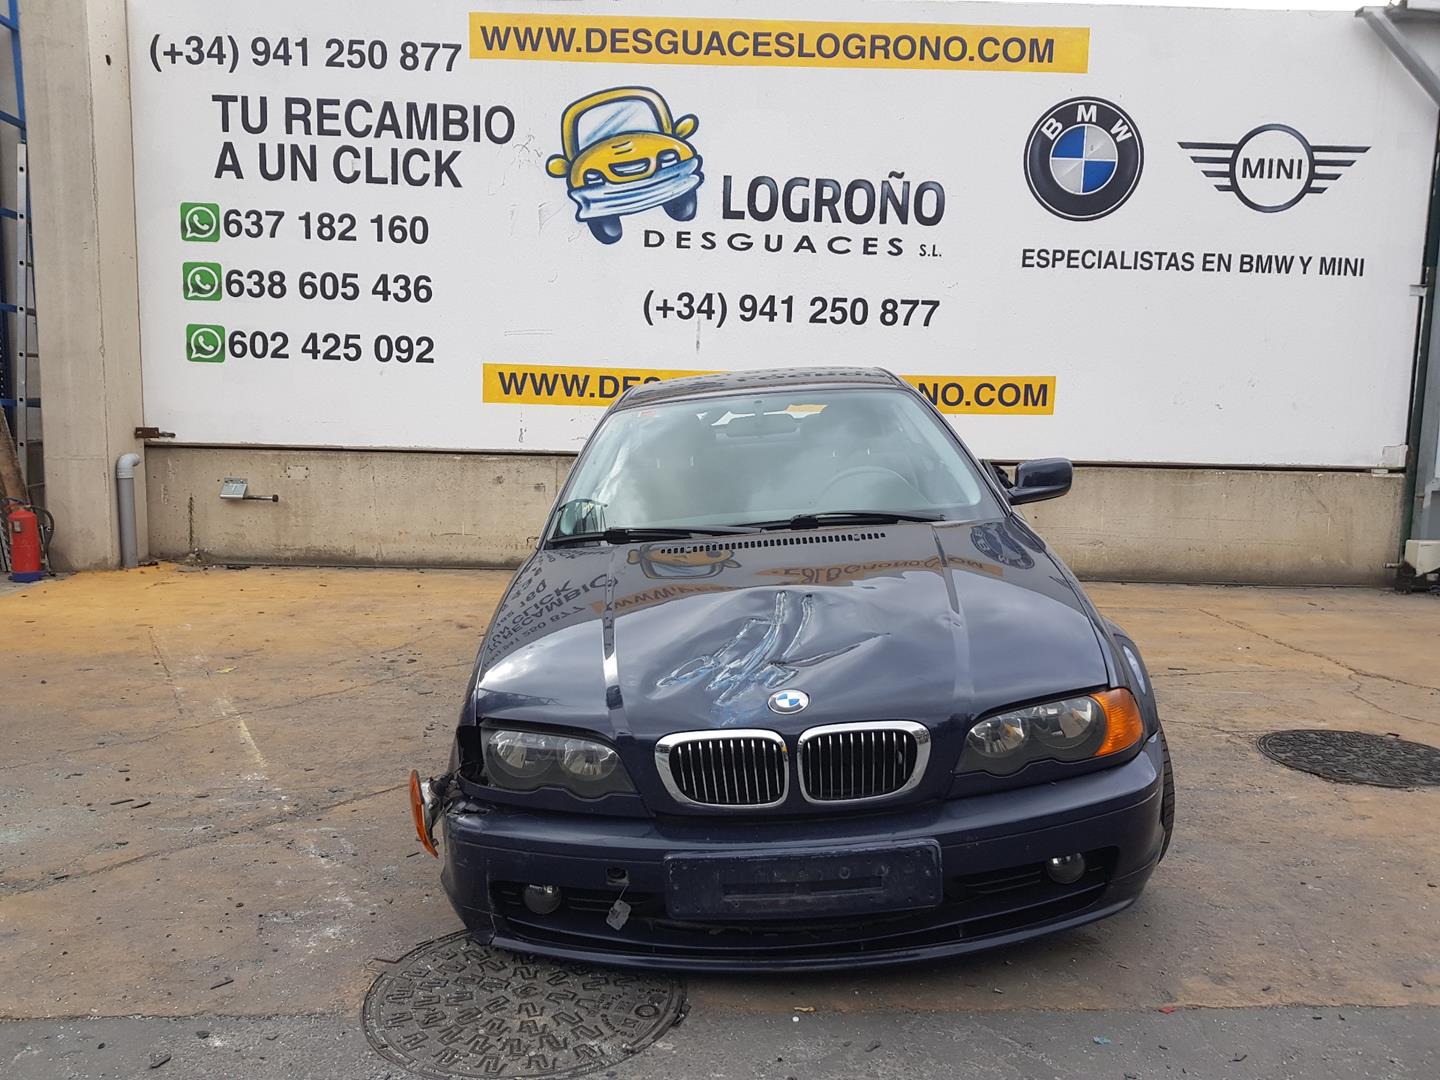 BMW 3 Series E46 (1997-2006) поворота переключение  61318363668, 8363668 19872786